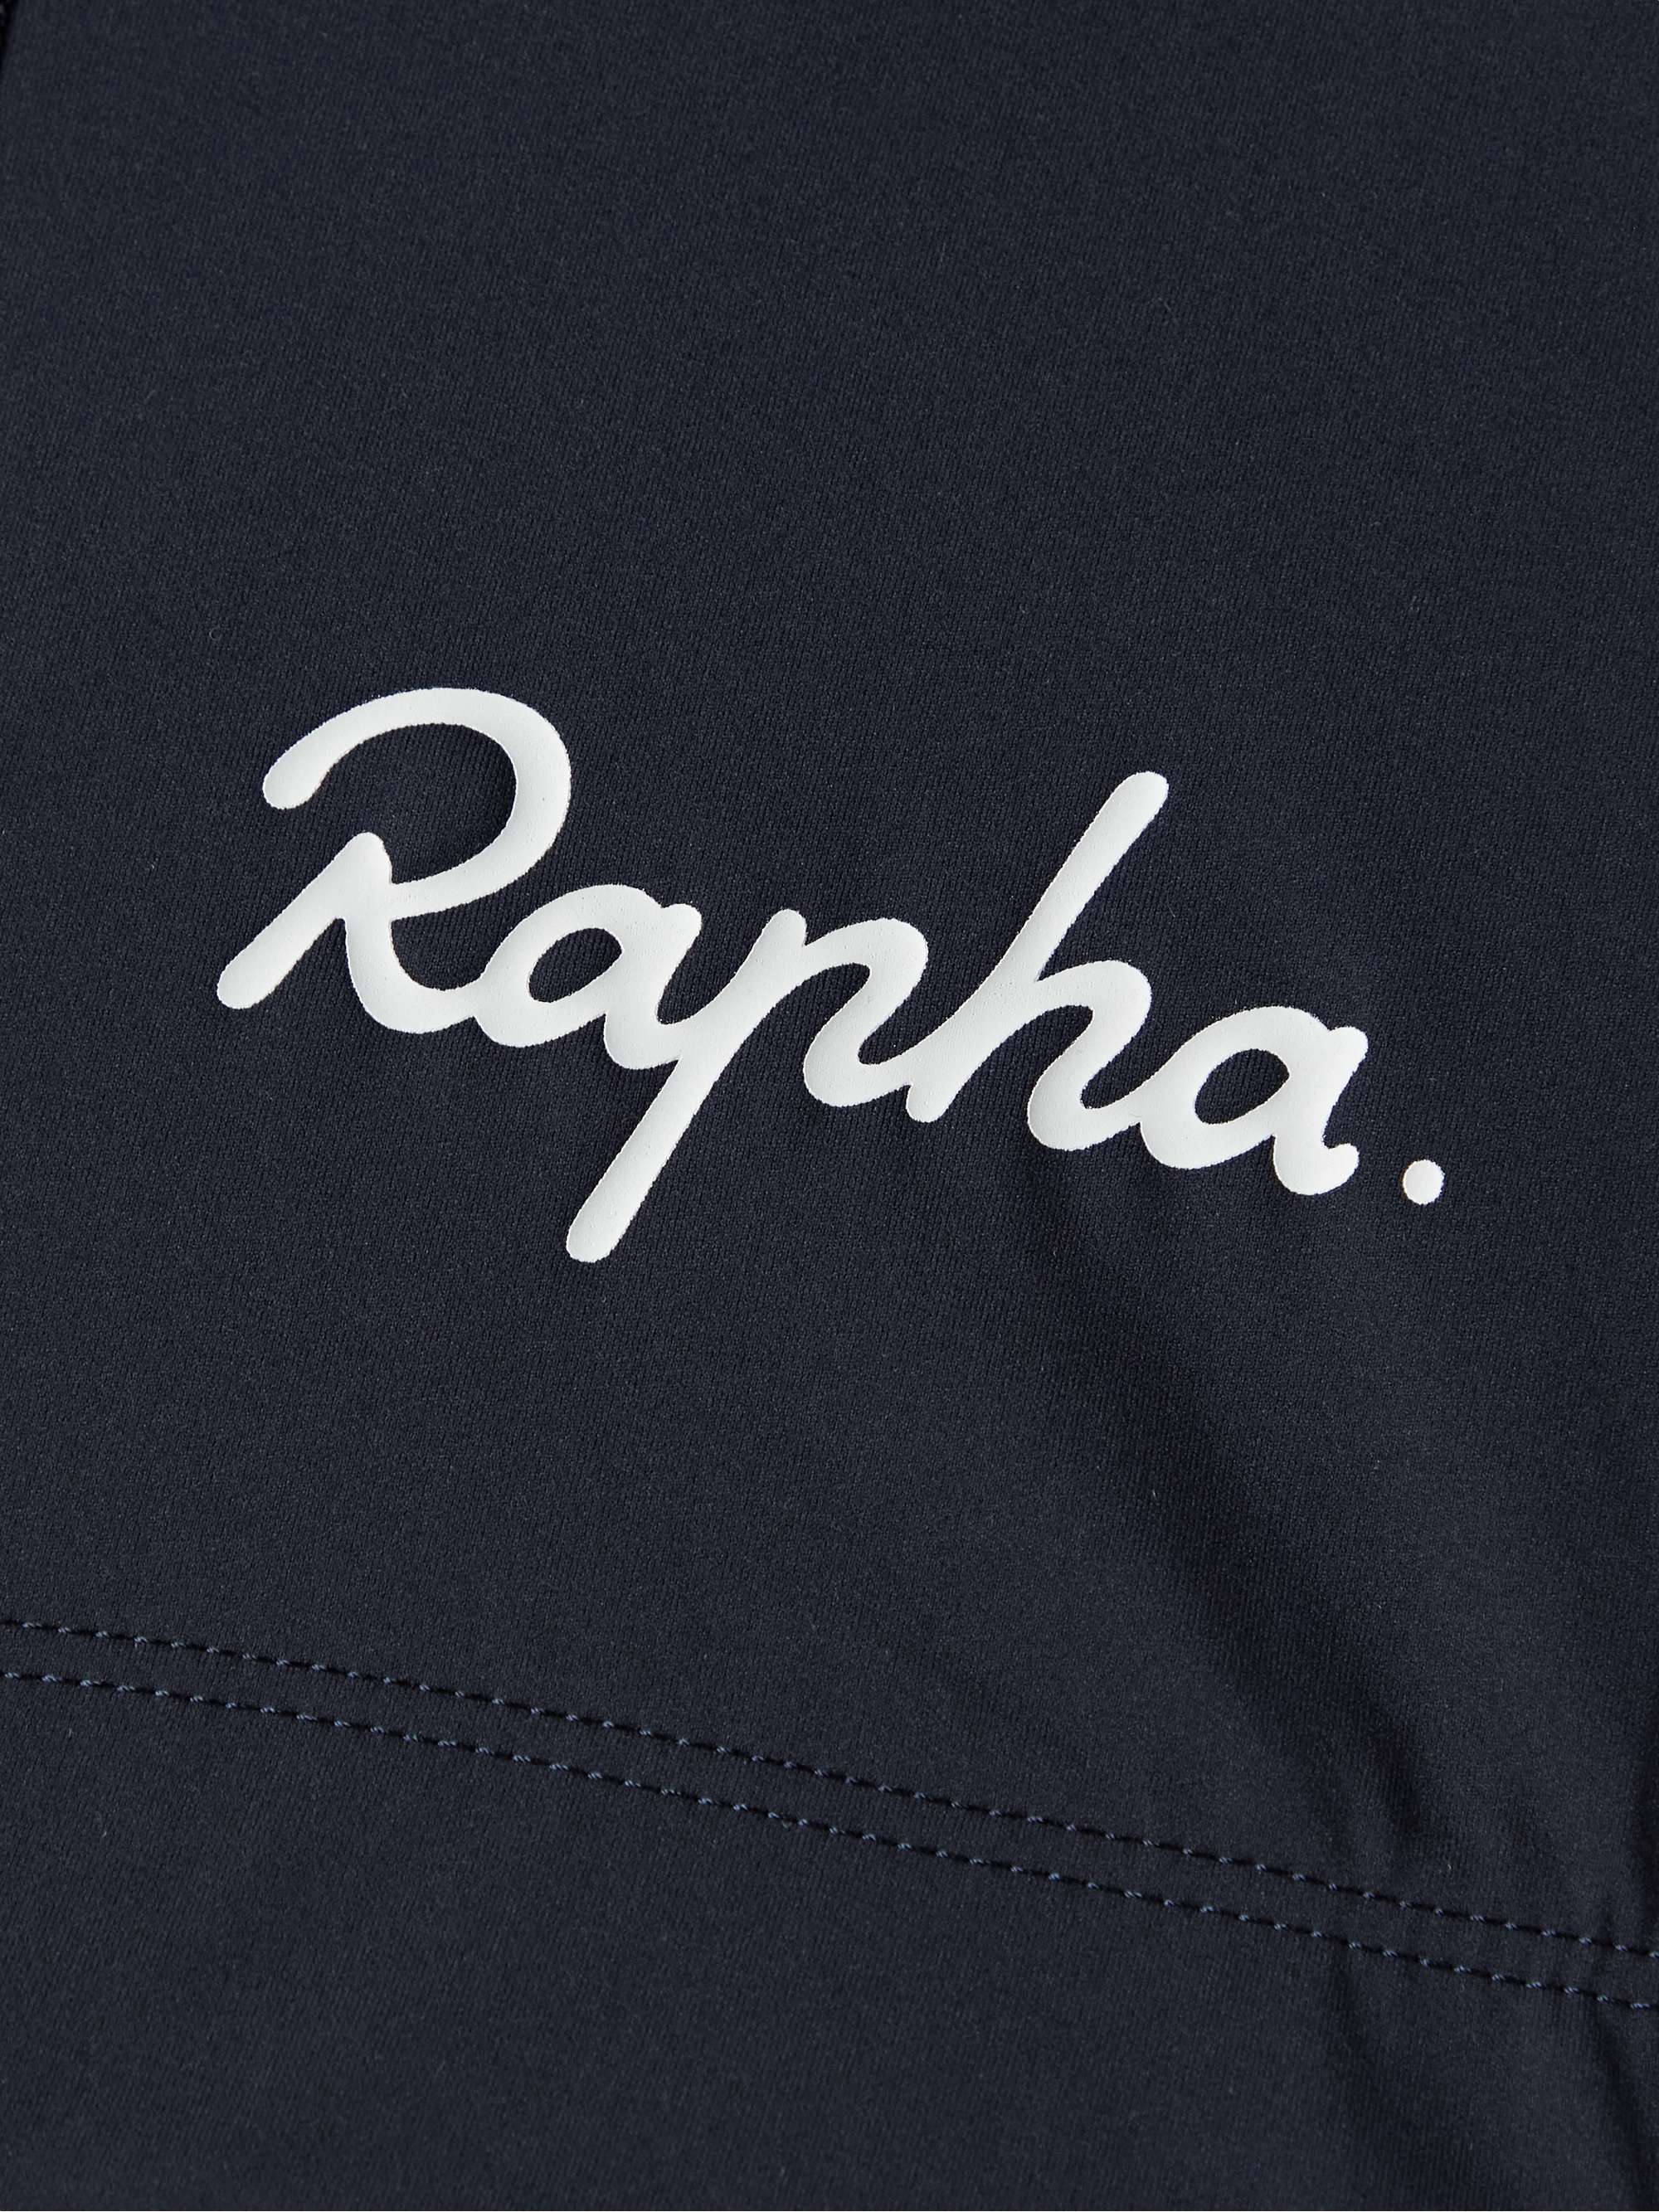 RAPHA Classic Recycled Cycling Bib Shorts